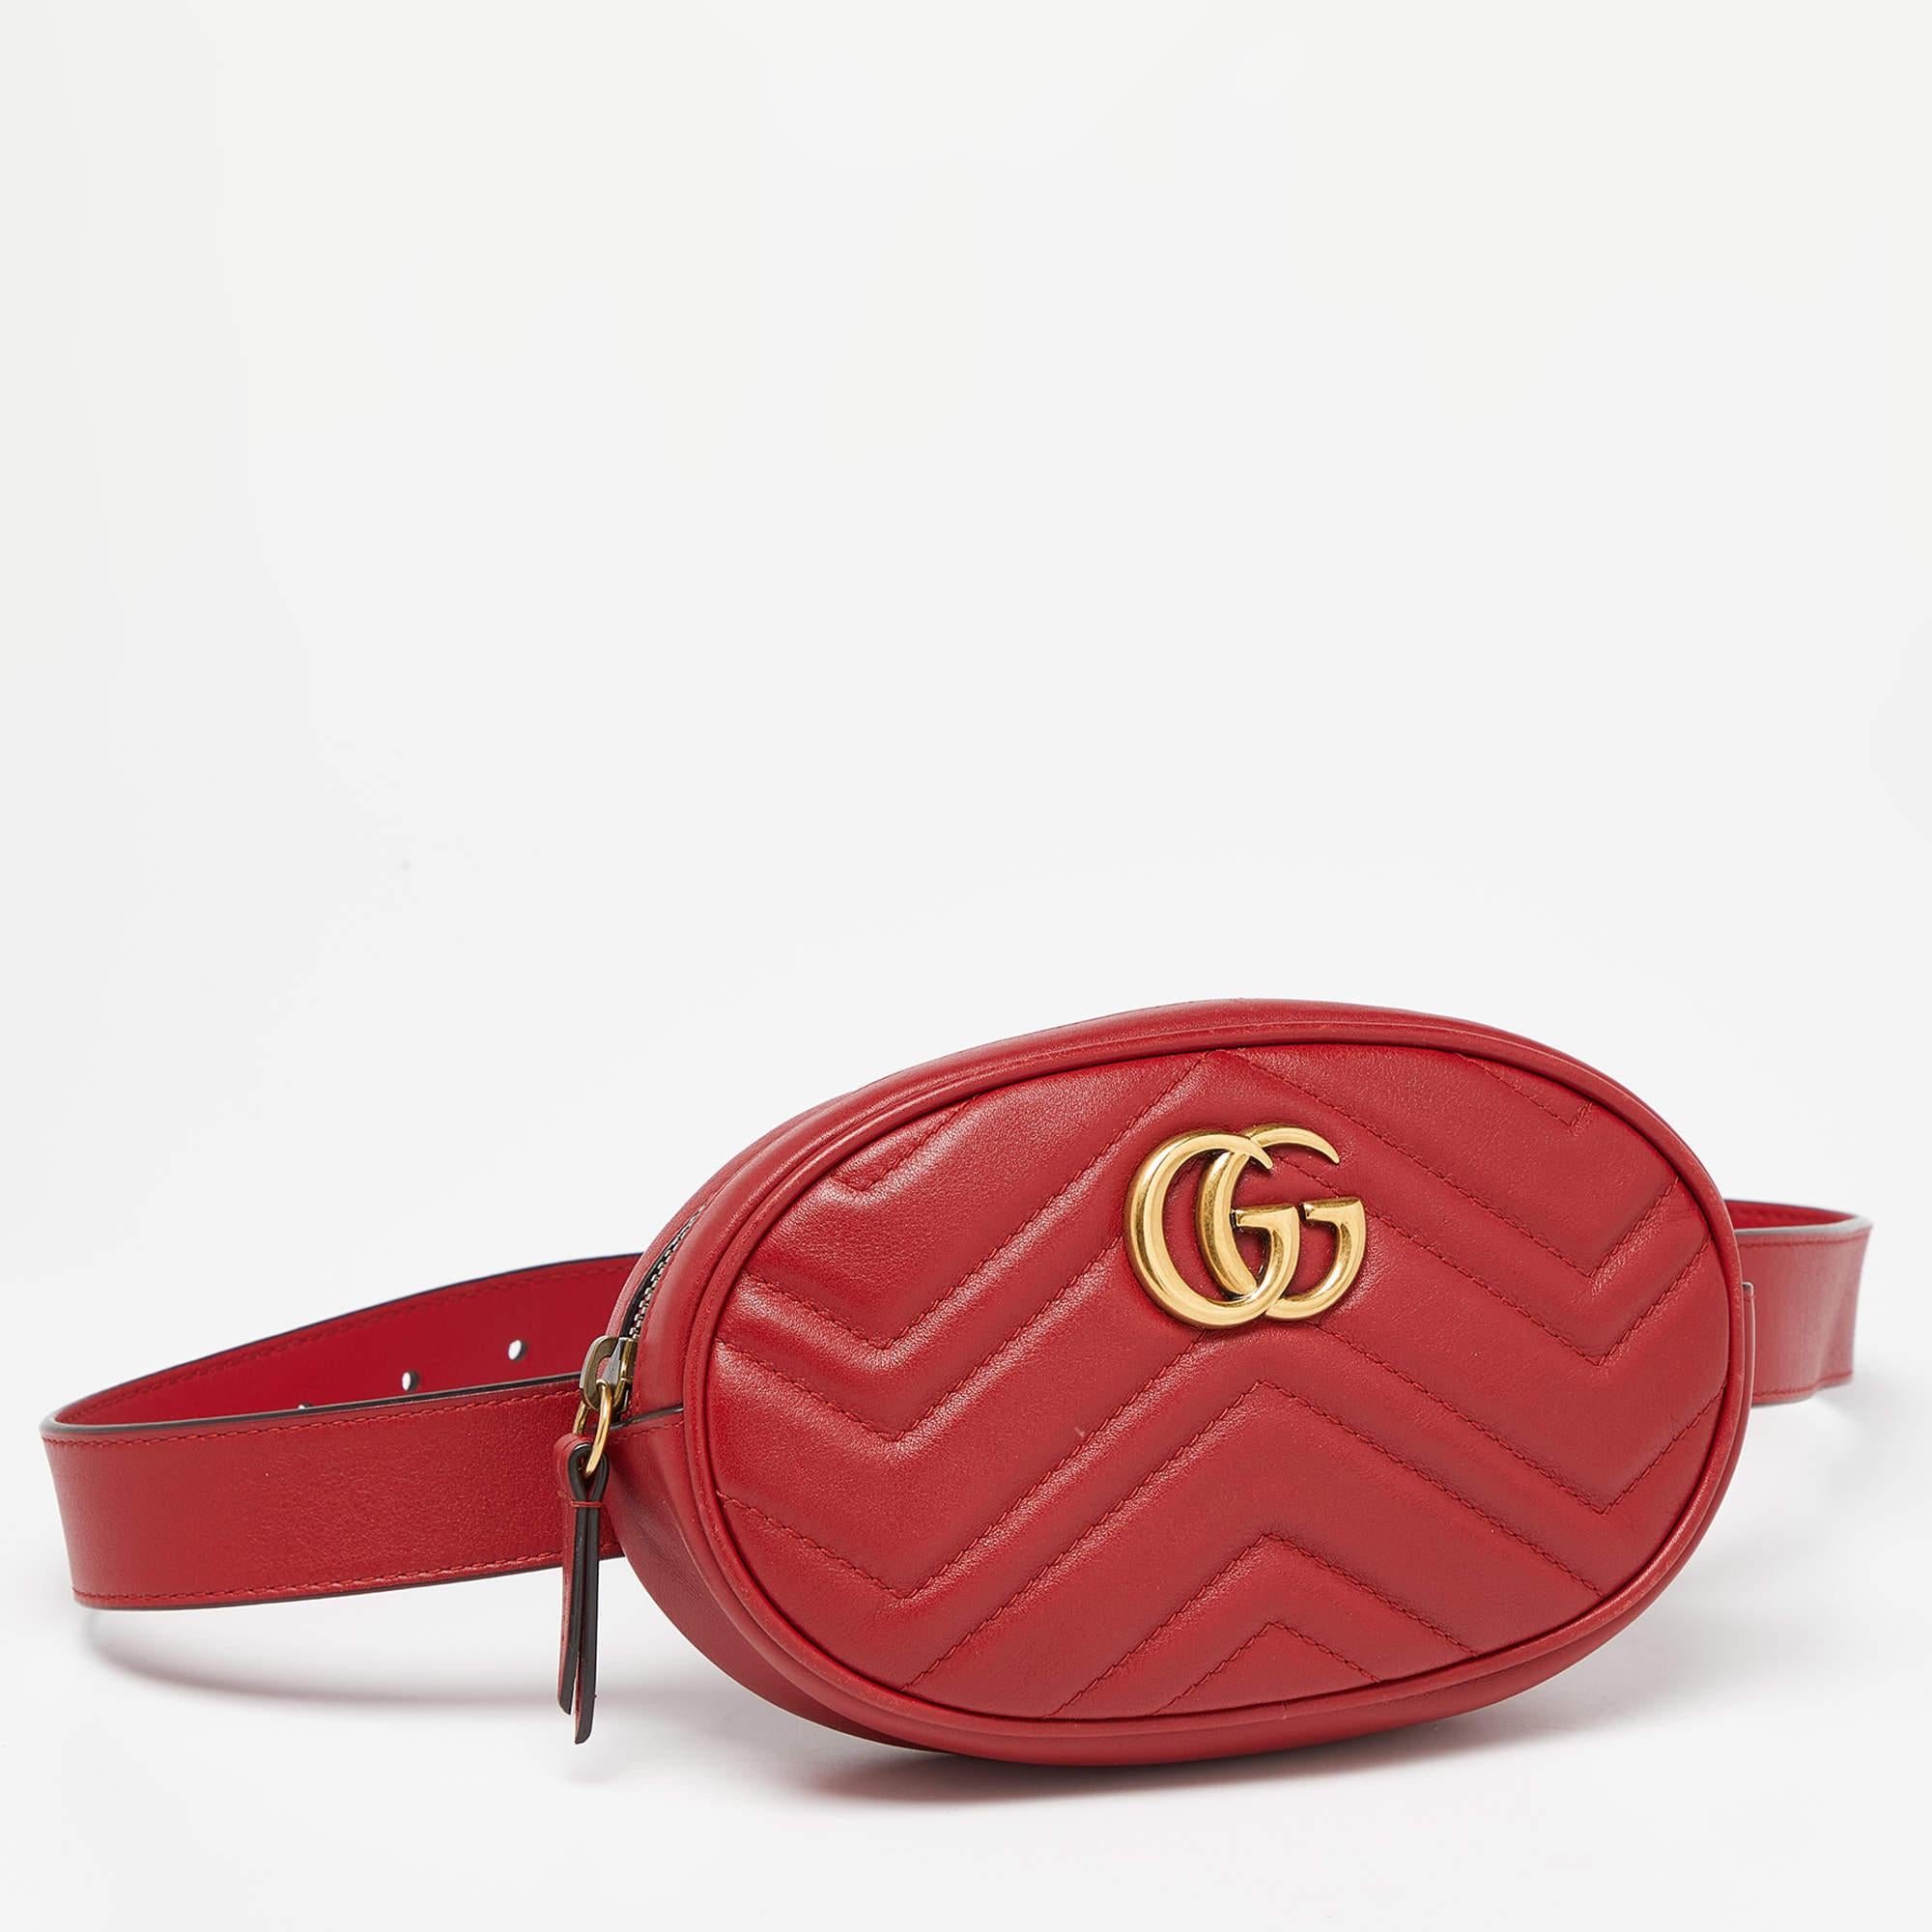 Le sac à ceinture GG Marmont de Gucci est un accessoire élégant et polyvalent. Confectionné en cuir rouge avec des surpiqûres matelassées, il arbore le logo GG emblématique, se ferme à l'aide d'une fermeture éclair et est doté d'une bandoulière